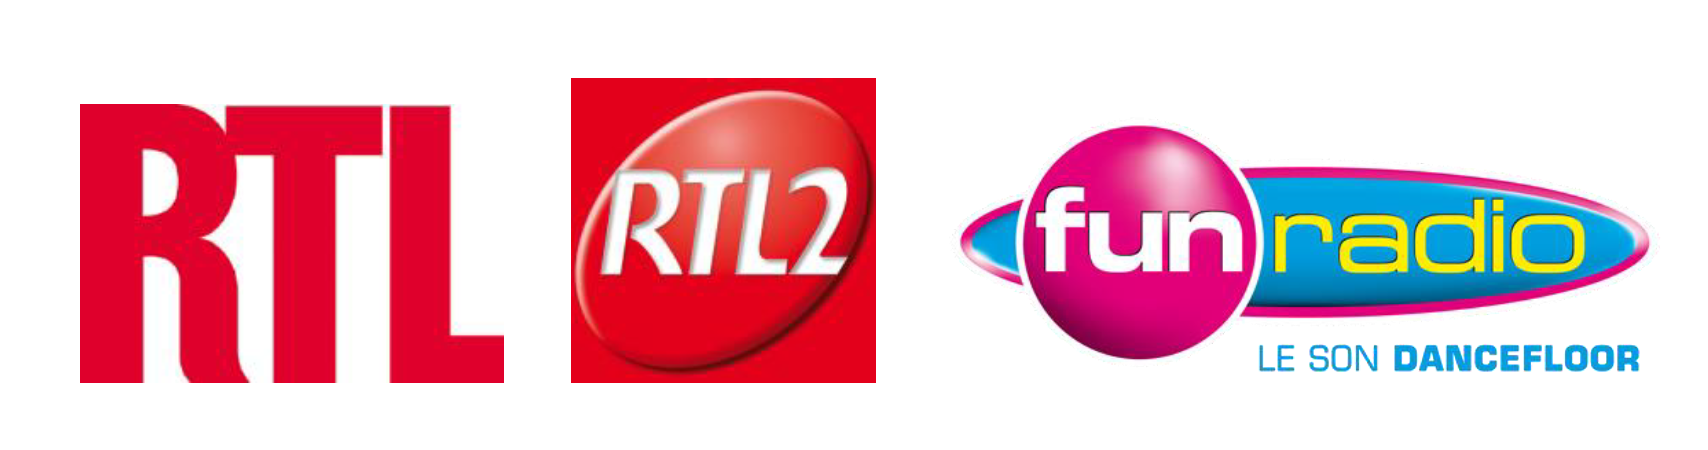 Nouvelles fréquences pour RTL, RTL2 et Fun Radio